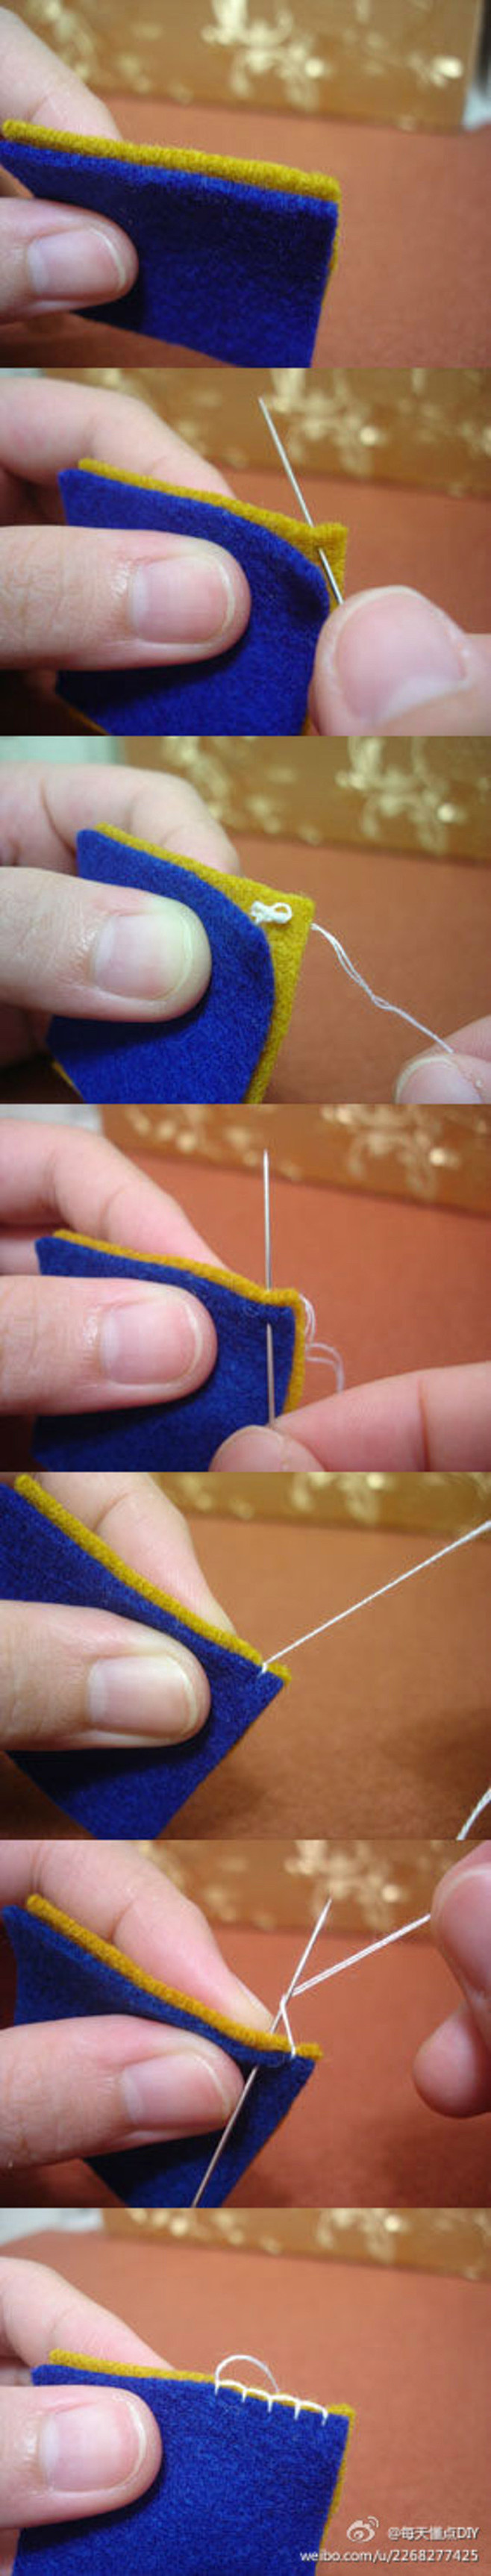 毛边缝是不织布作品最常用针法：第一针时候...